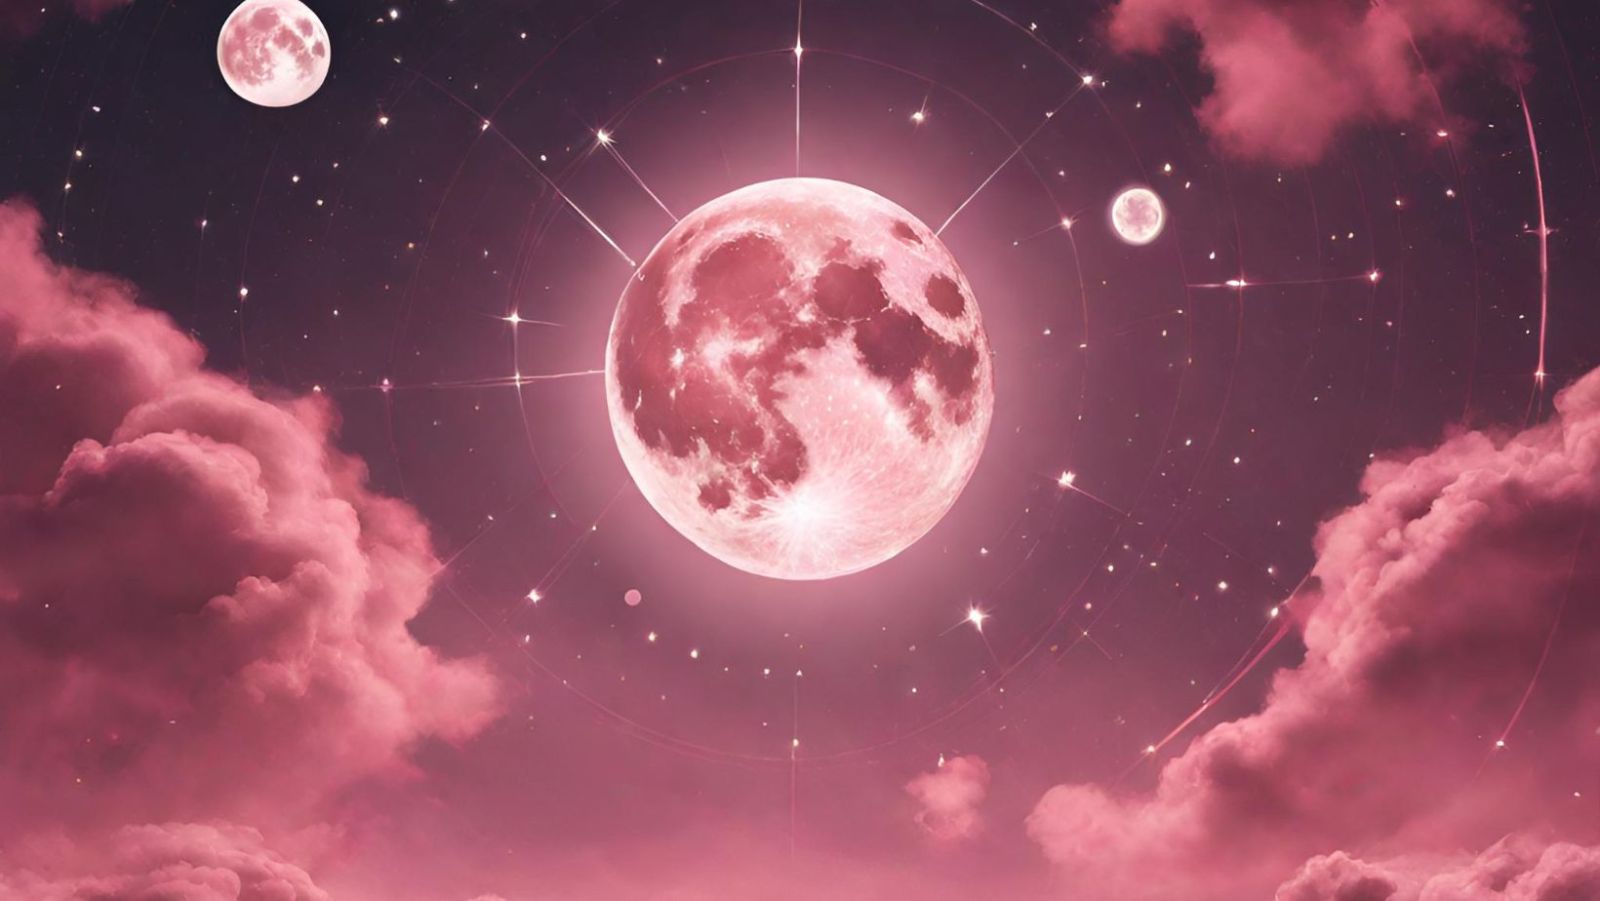 La Lune Rose se choisit un favori : un signe astrologique va connaître une chance inouïe